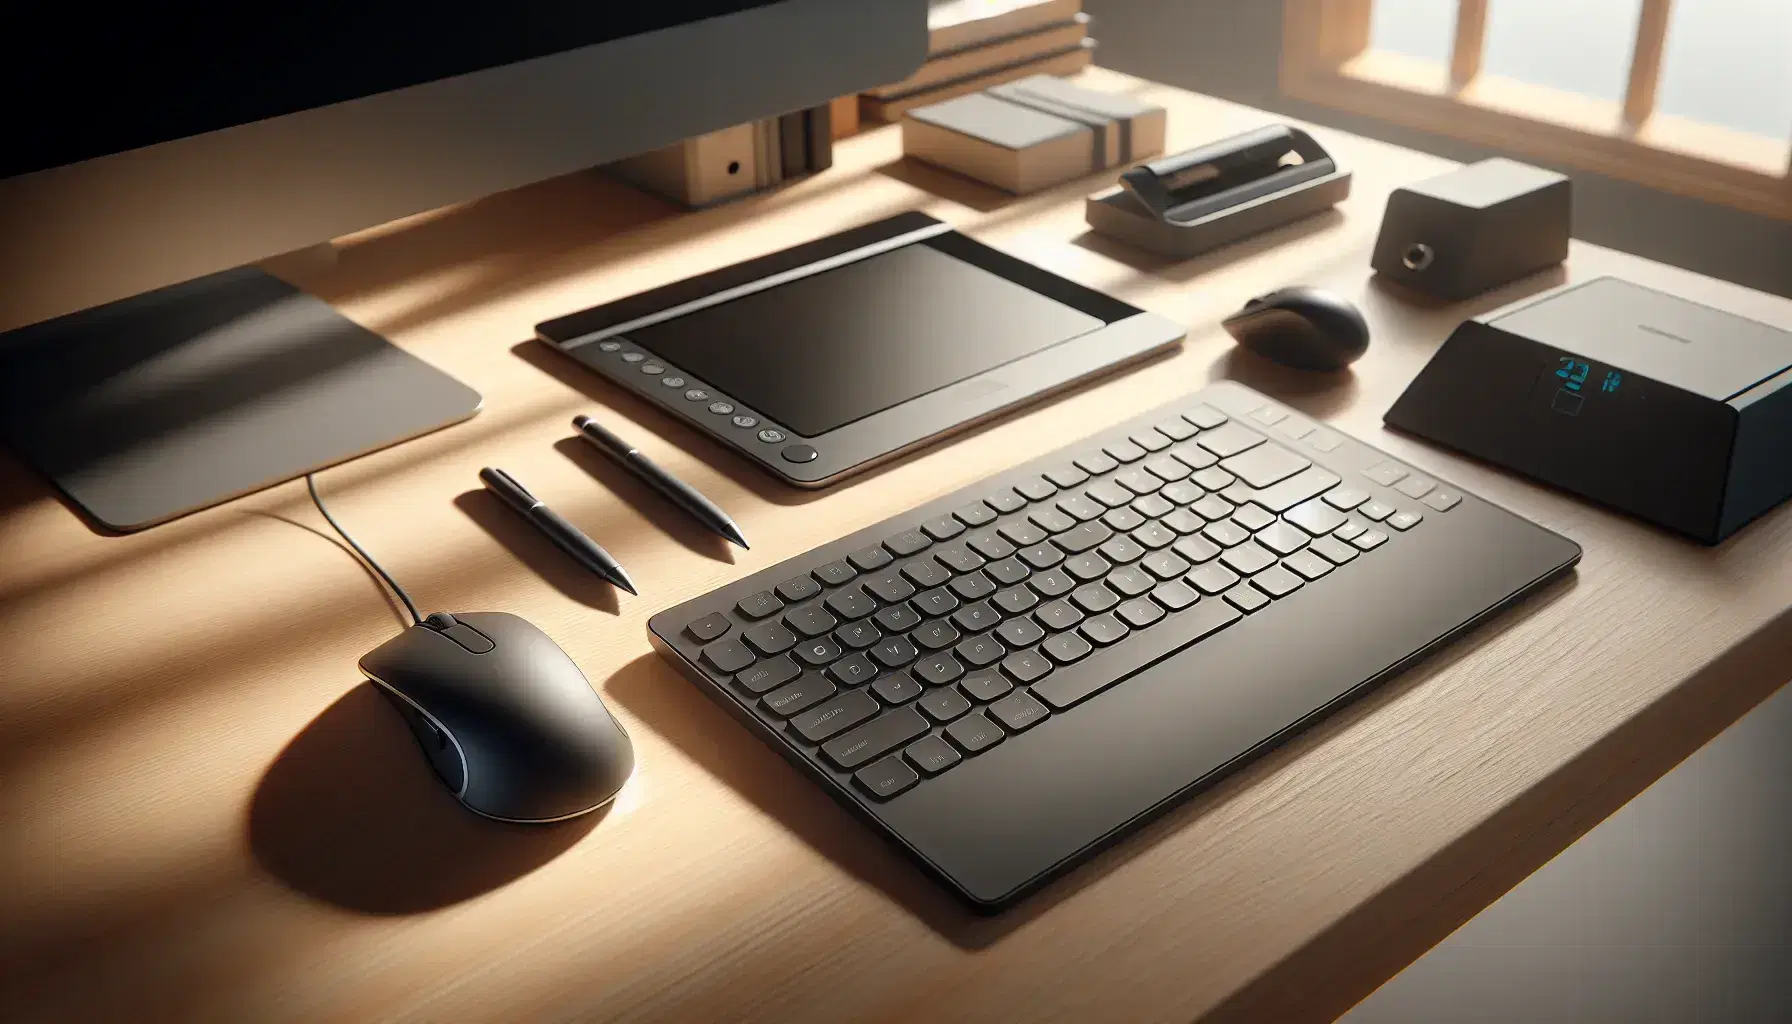 Escritorio de oficina con teclado, ratón ergonómico, tableta digital con lápiz y escáner plano, todo bajo luz natural que crea sombras suaves.